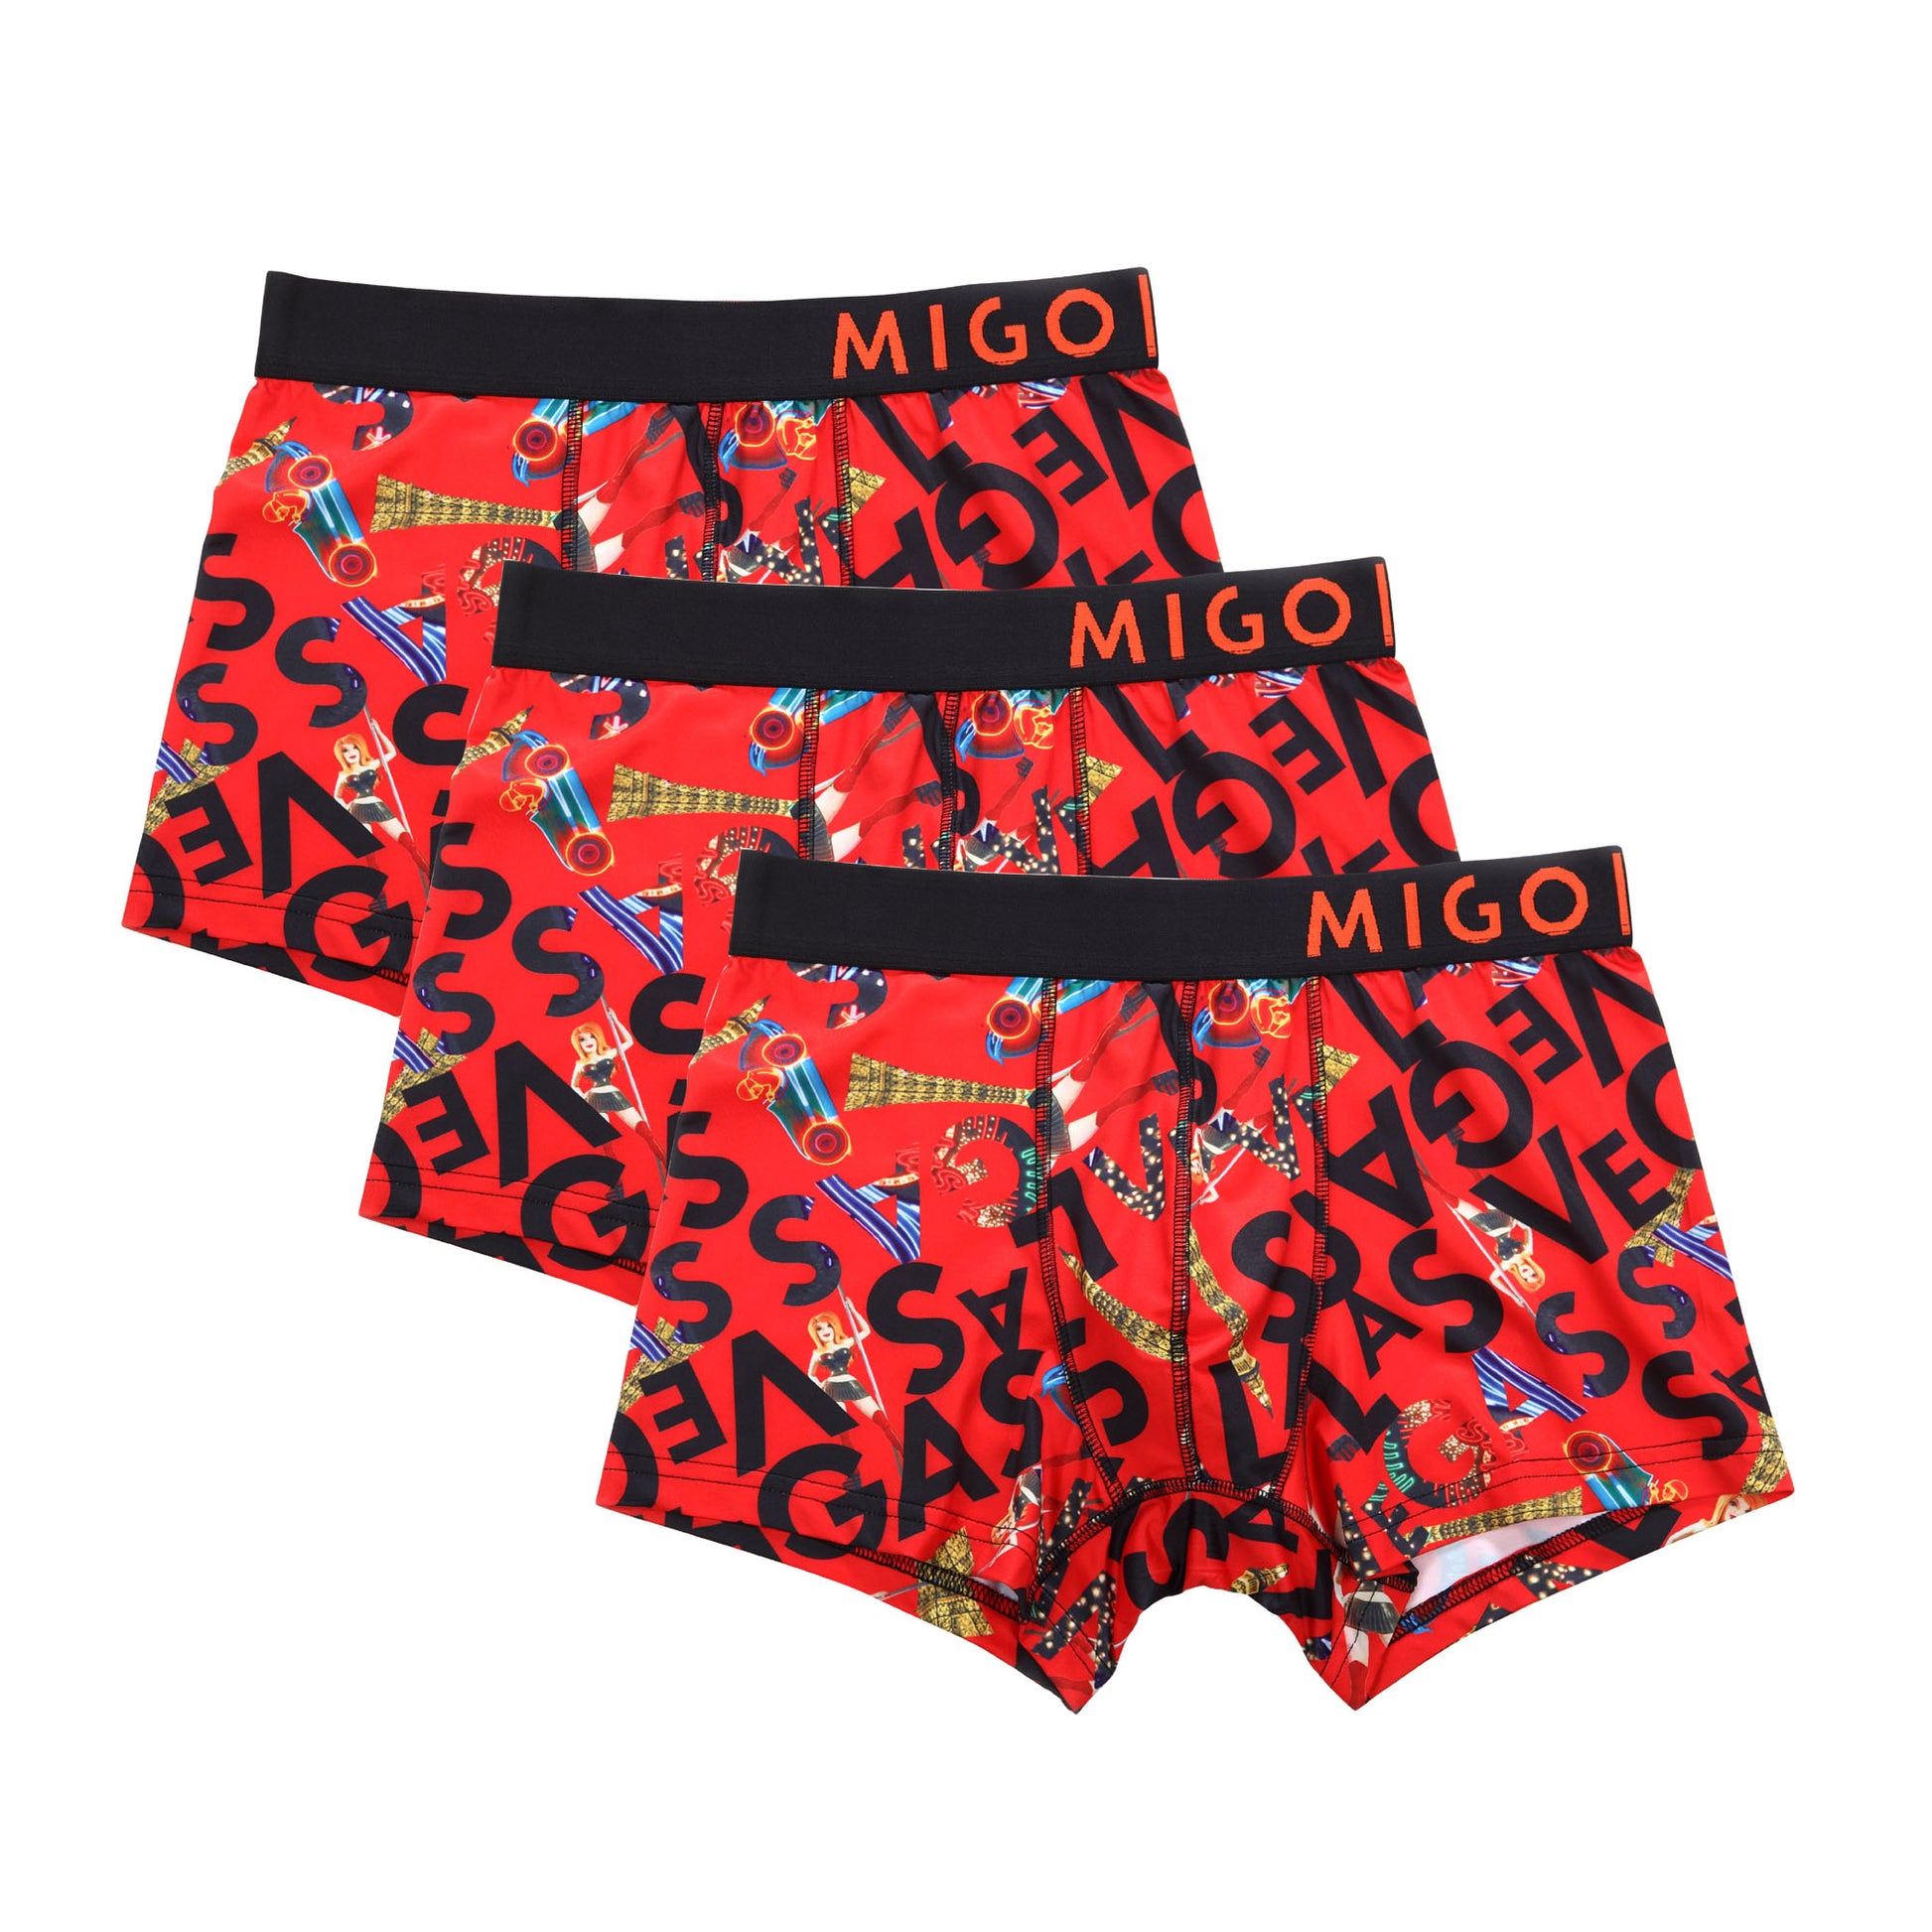 Bello Boxer 3 in 1 - [MIGO Menswear]